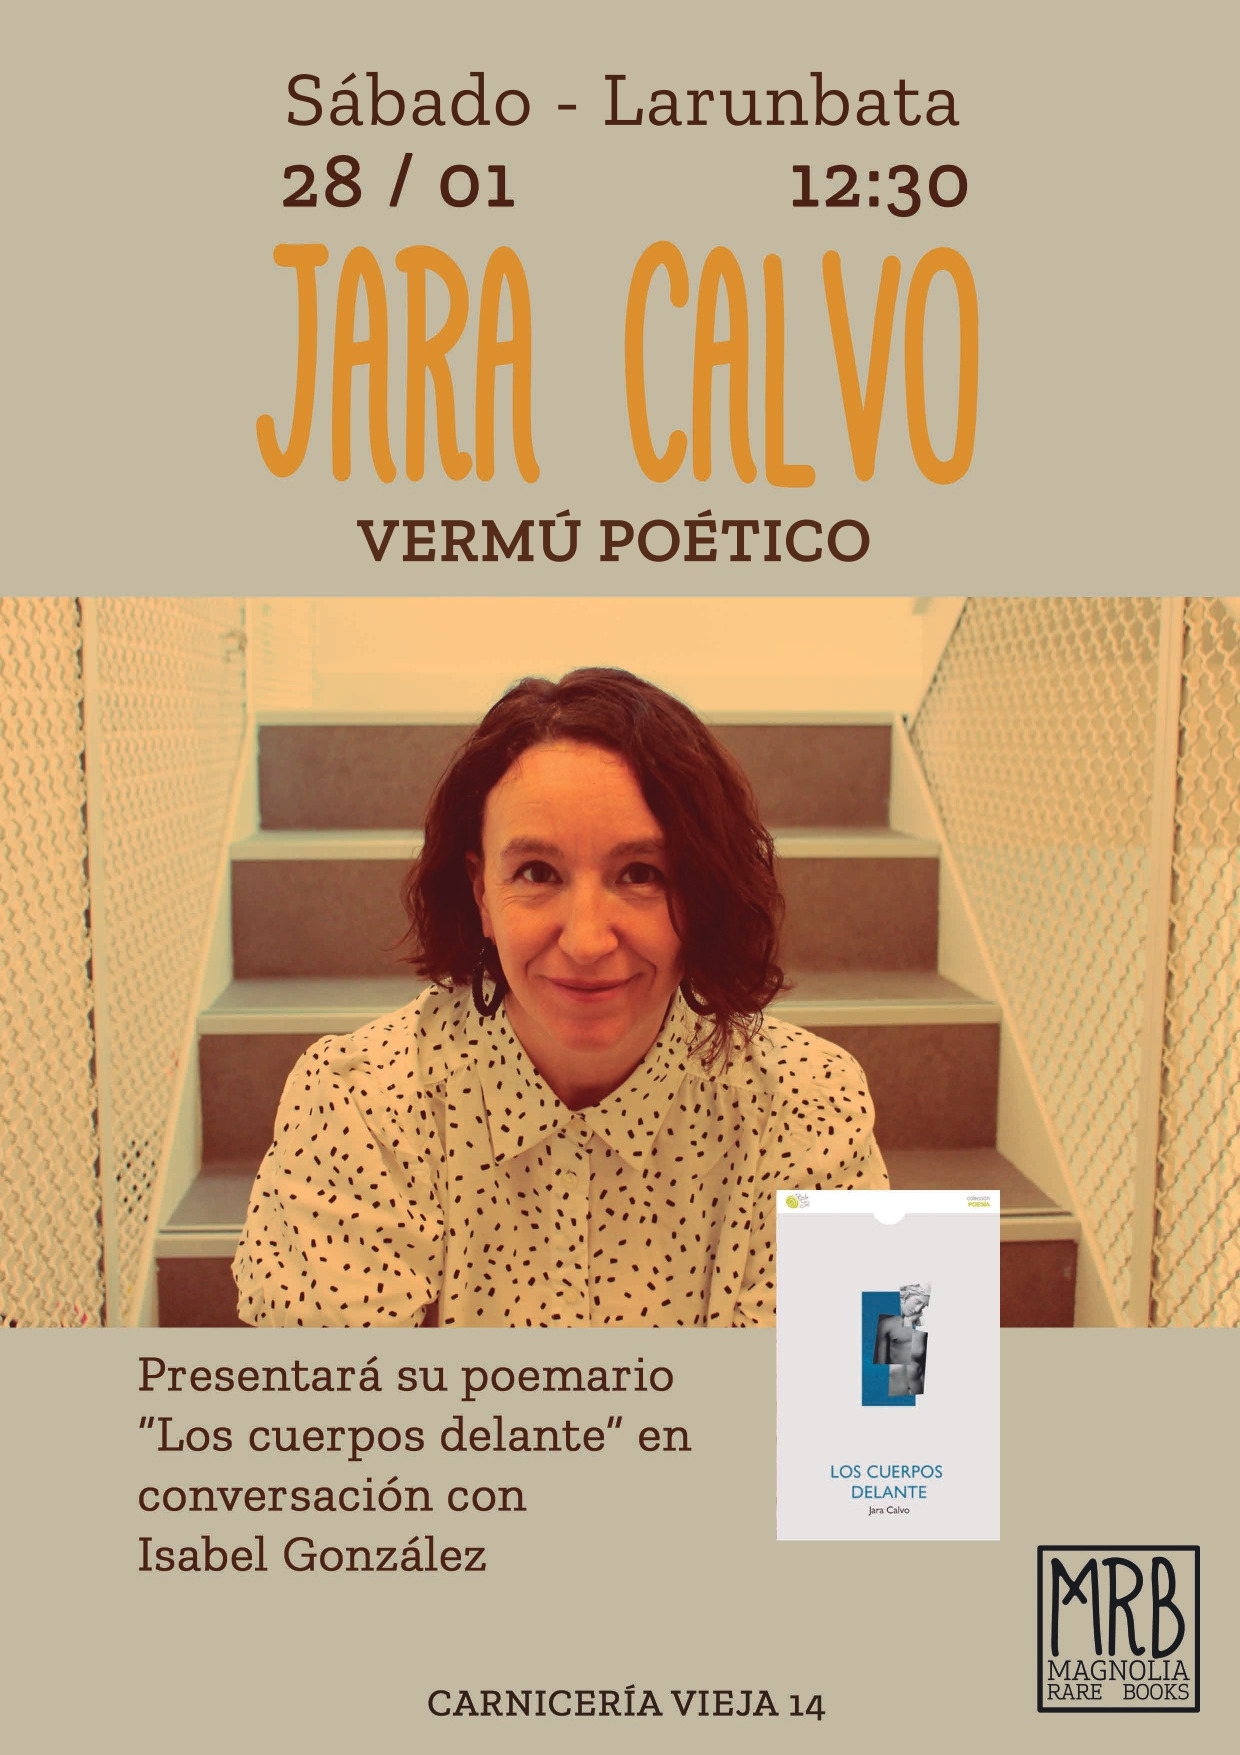 Presntación del poemario LOS CUERPOS DELANTE, de Jara Calvo